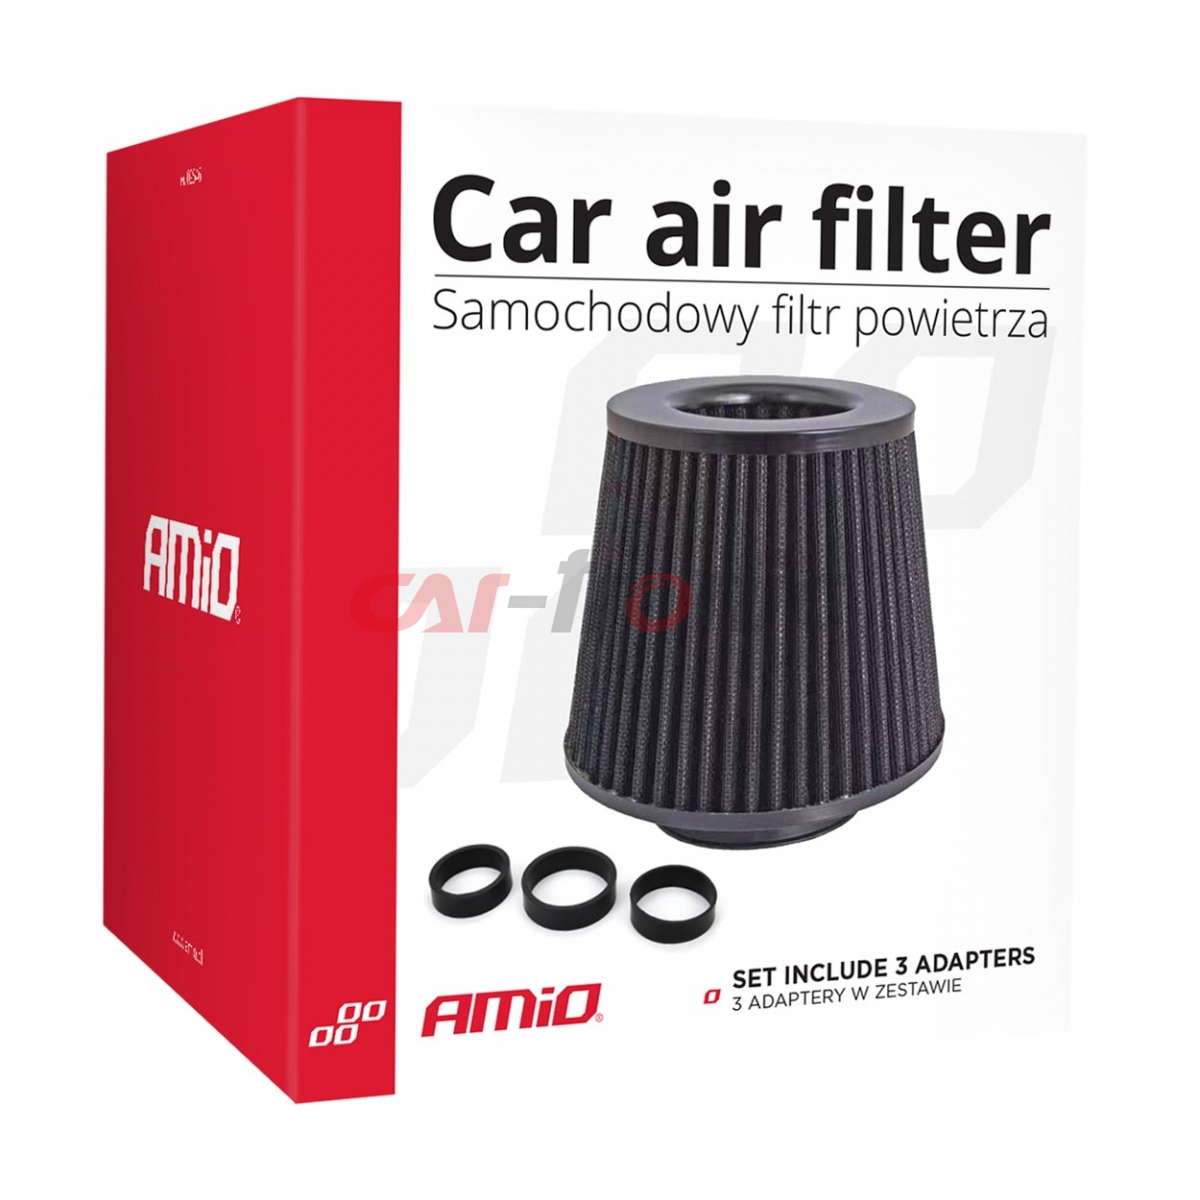 Filtr powietrza stożkowy uniwersalny czarny + 3 adaptery AMIO-02546